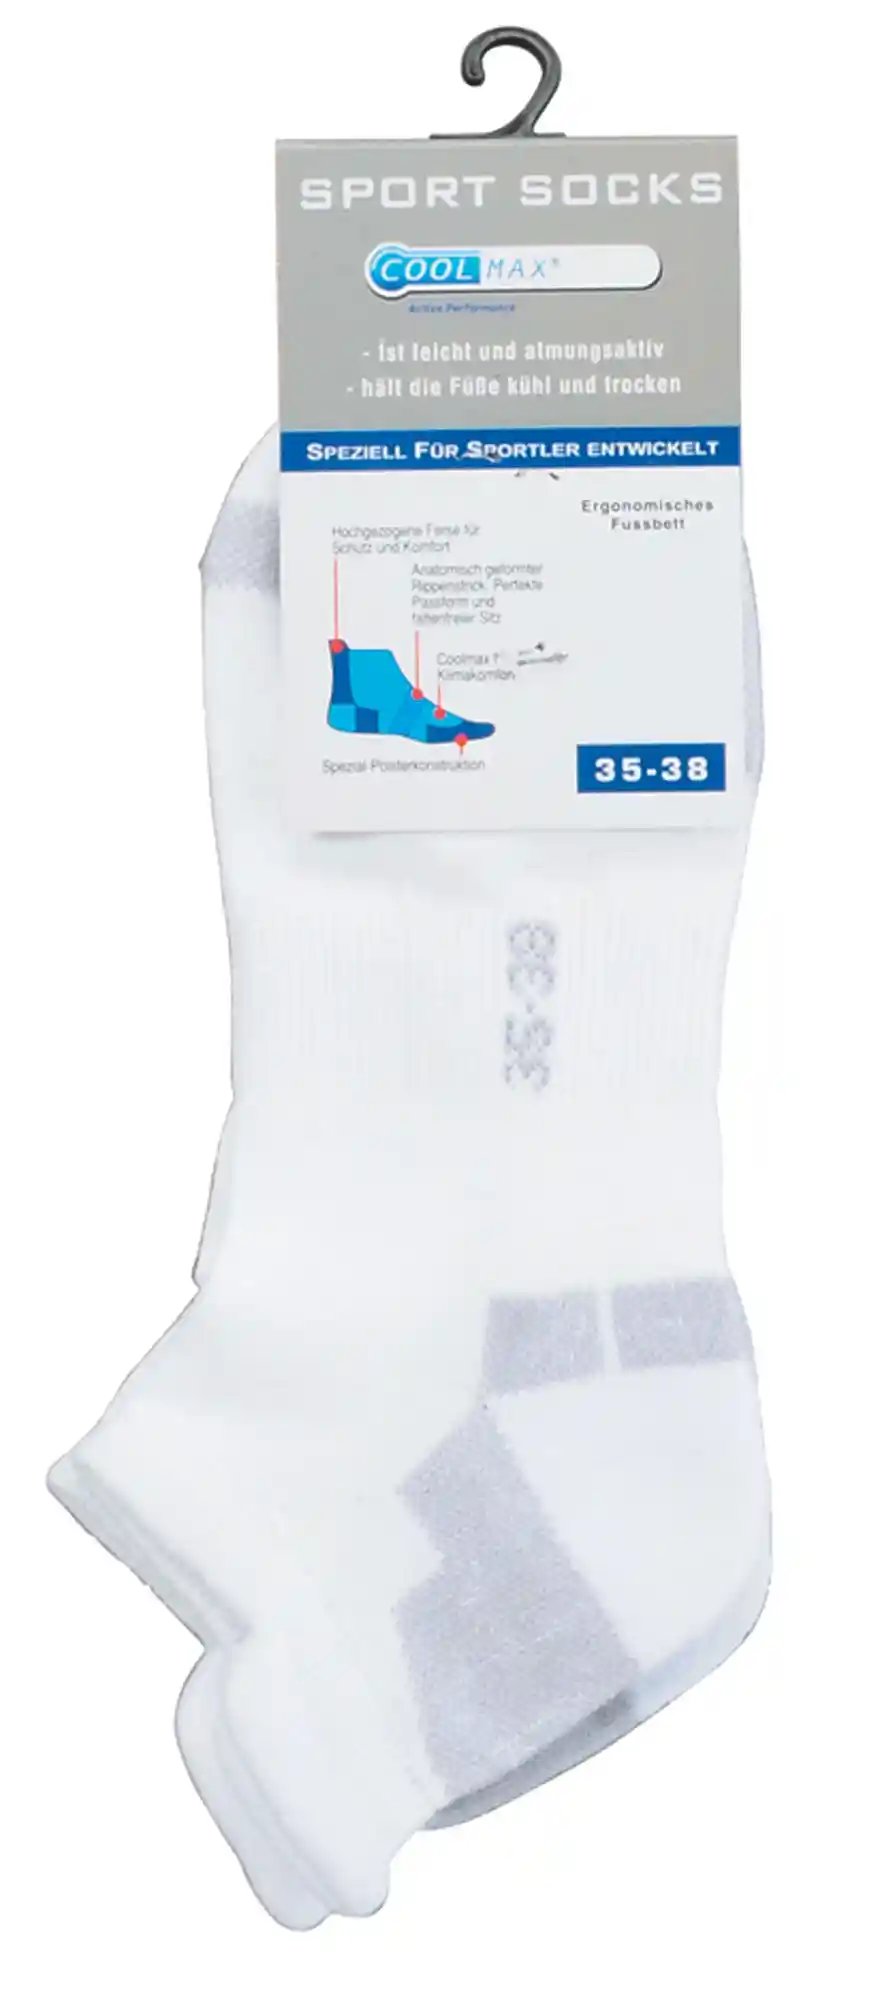 Sport Sneaker Socken mit Coolmax® und spezial Polstern sind hier im bündel zu sehen und in weiß.